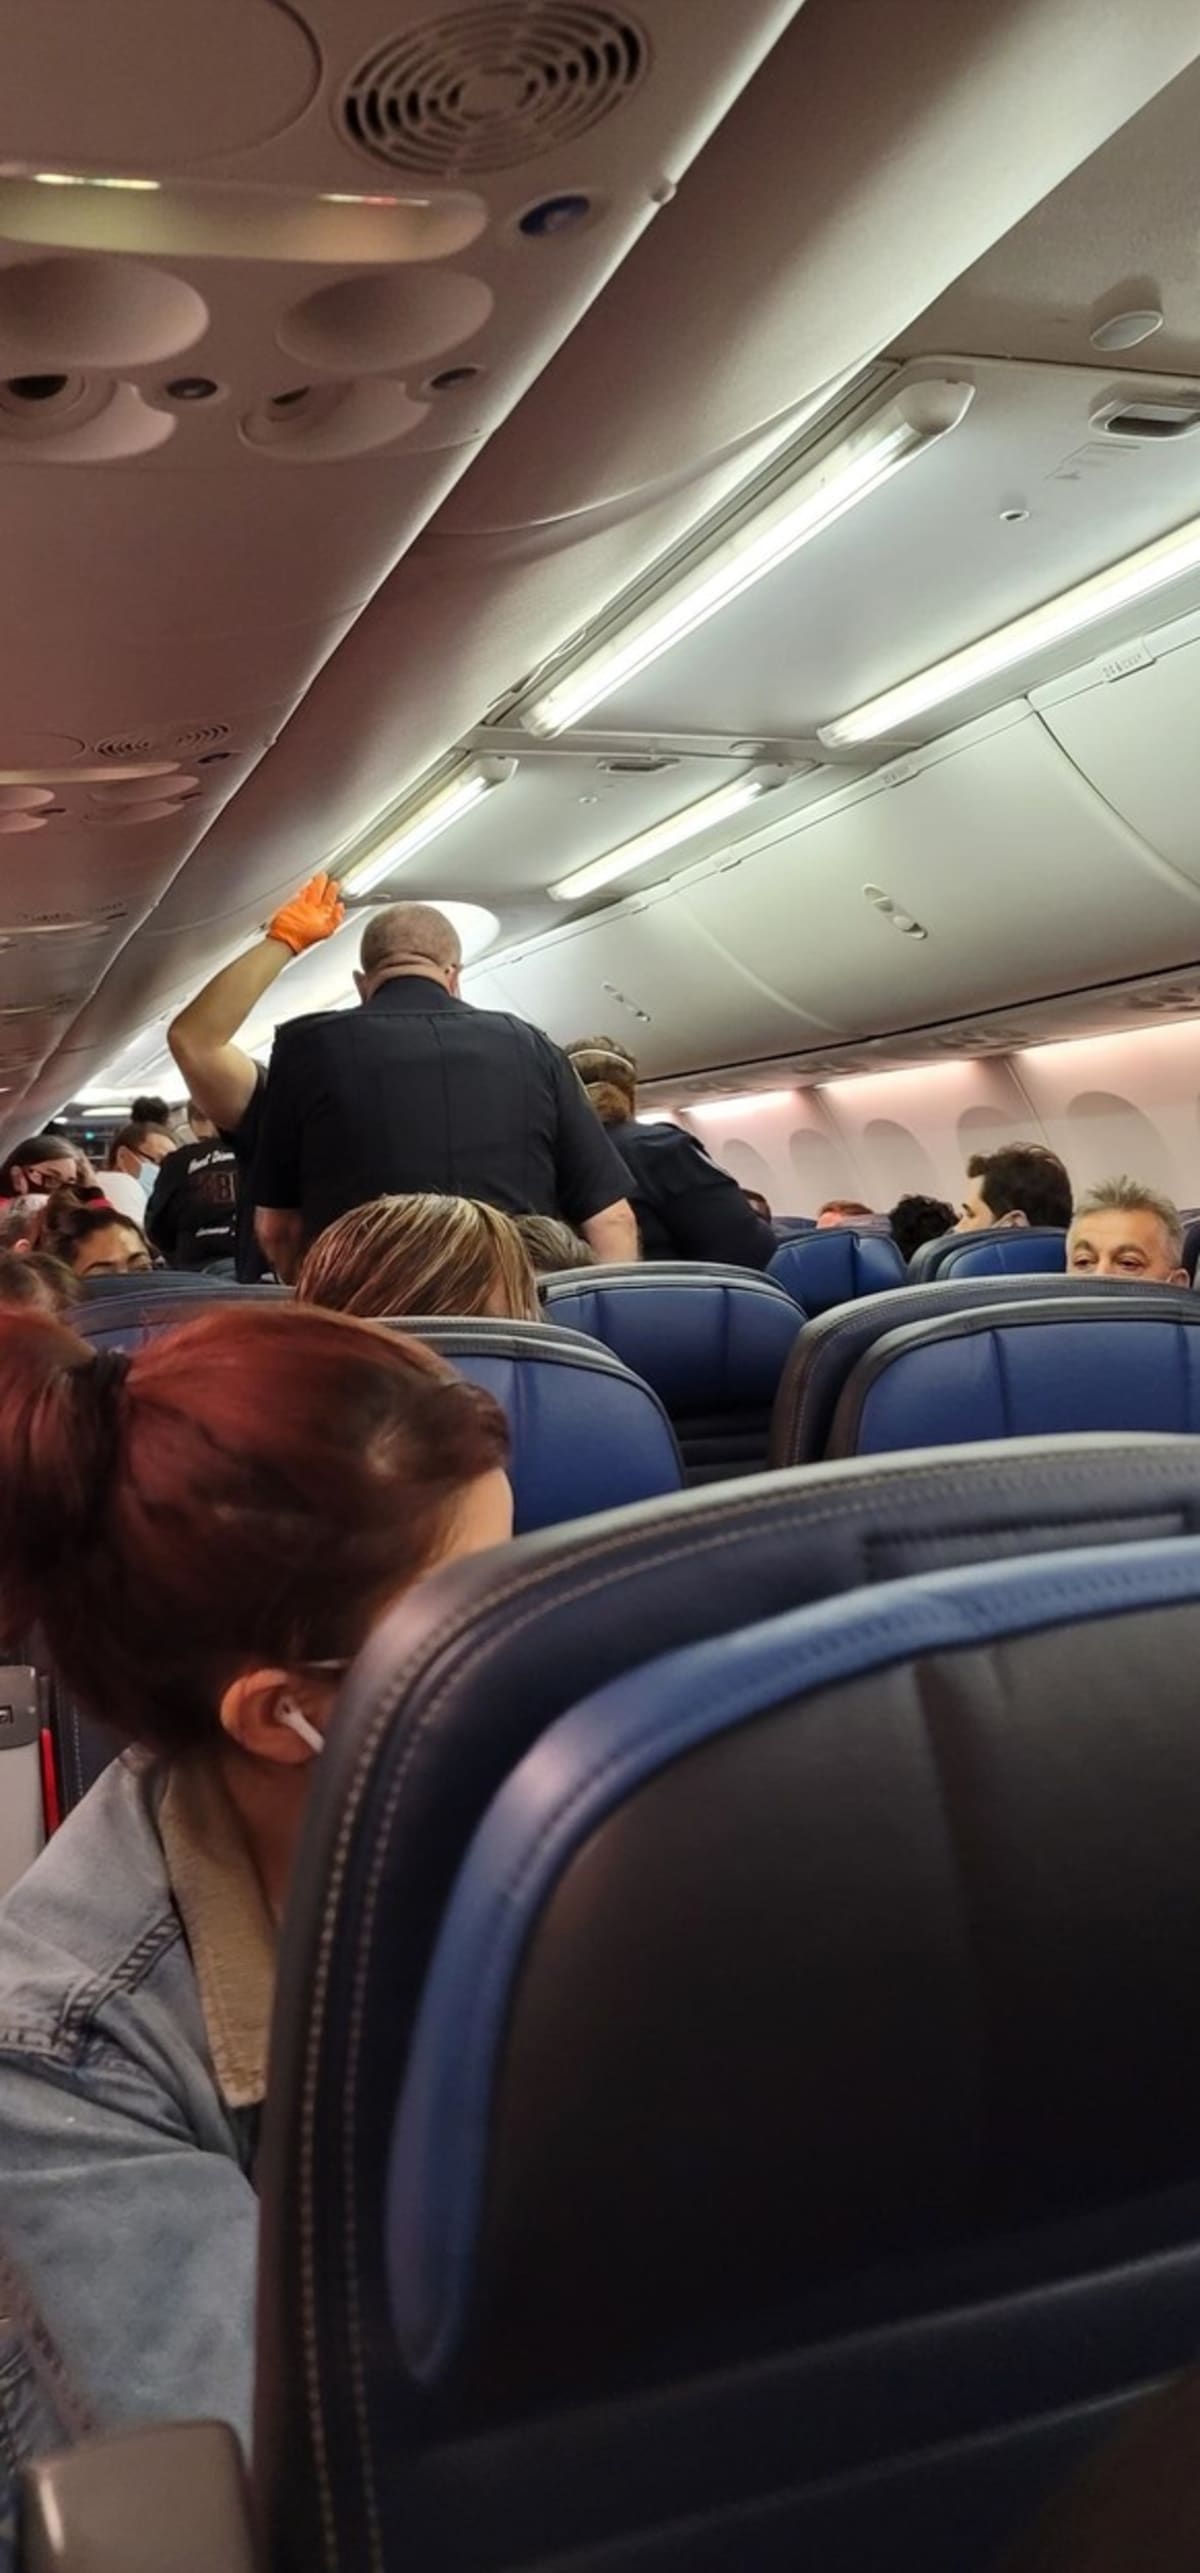 Fotografie dokazující chaos, který vznikl na palubě letadla poté, co muž s covidem zkolaboval a následně zemřel